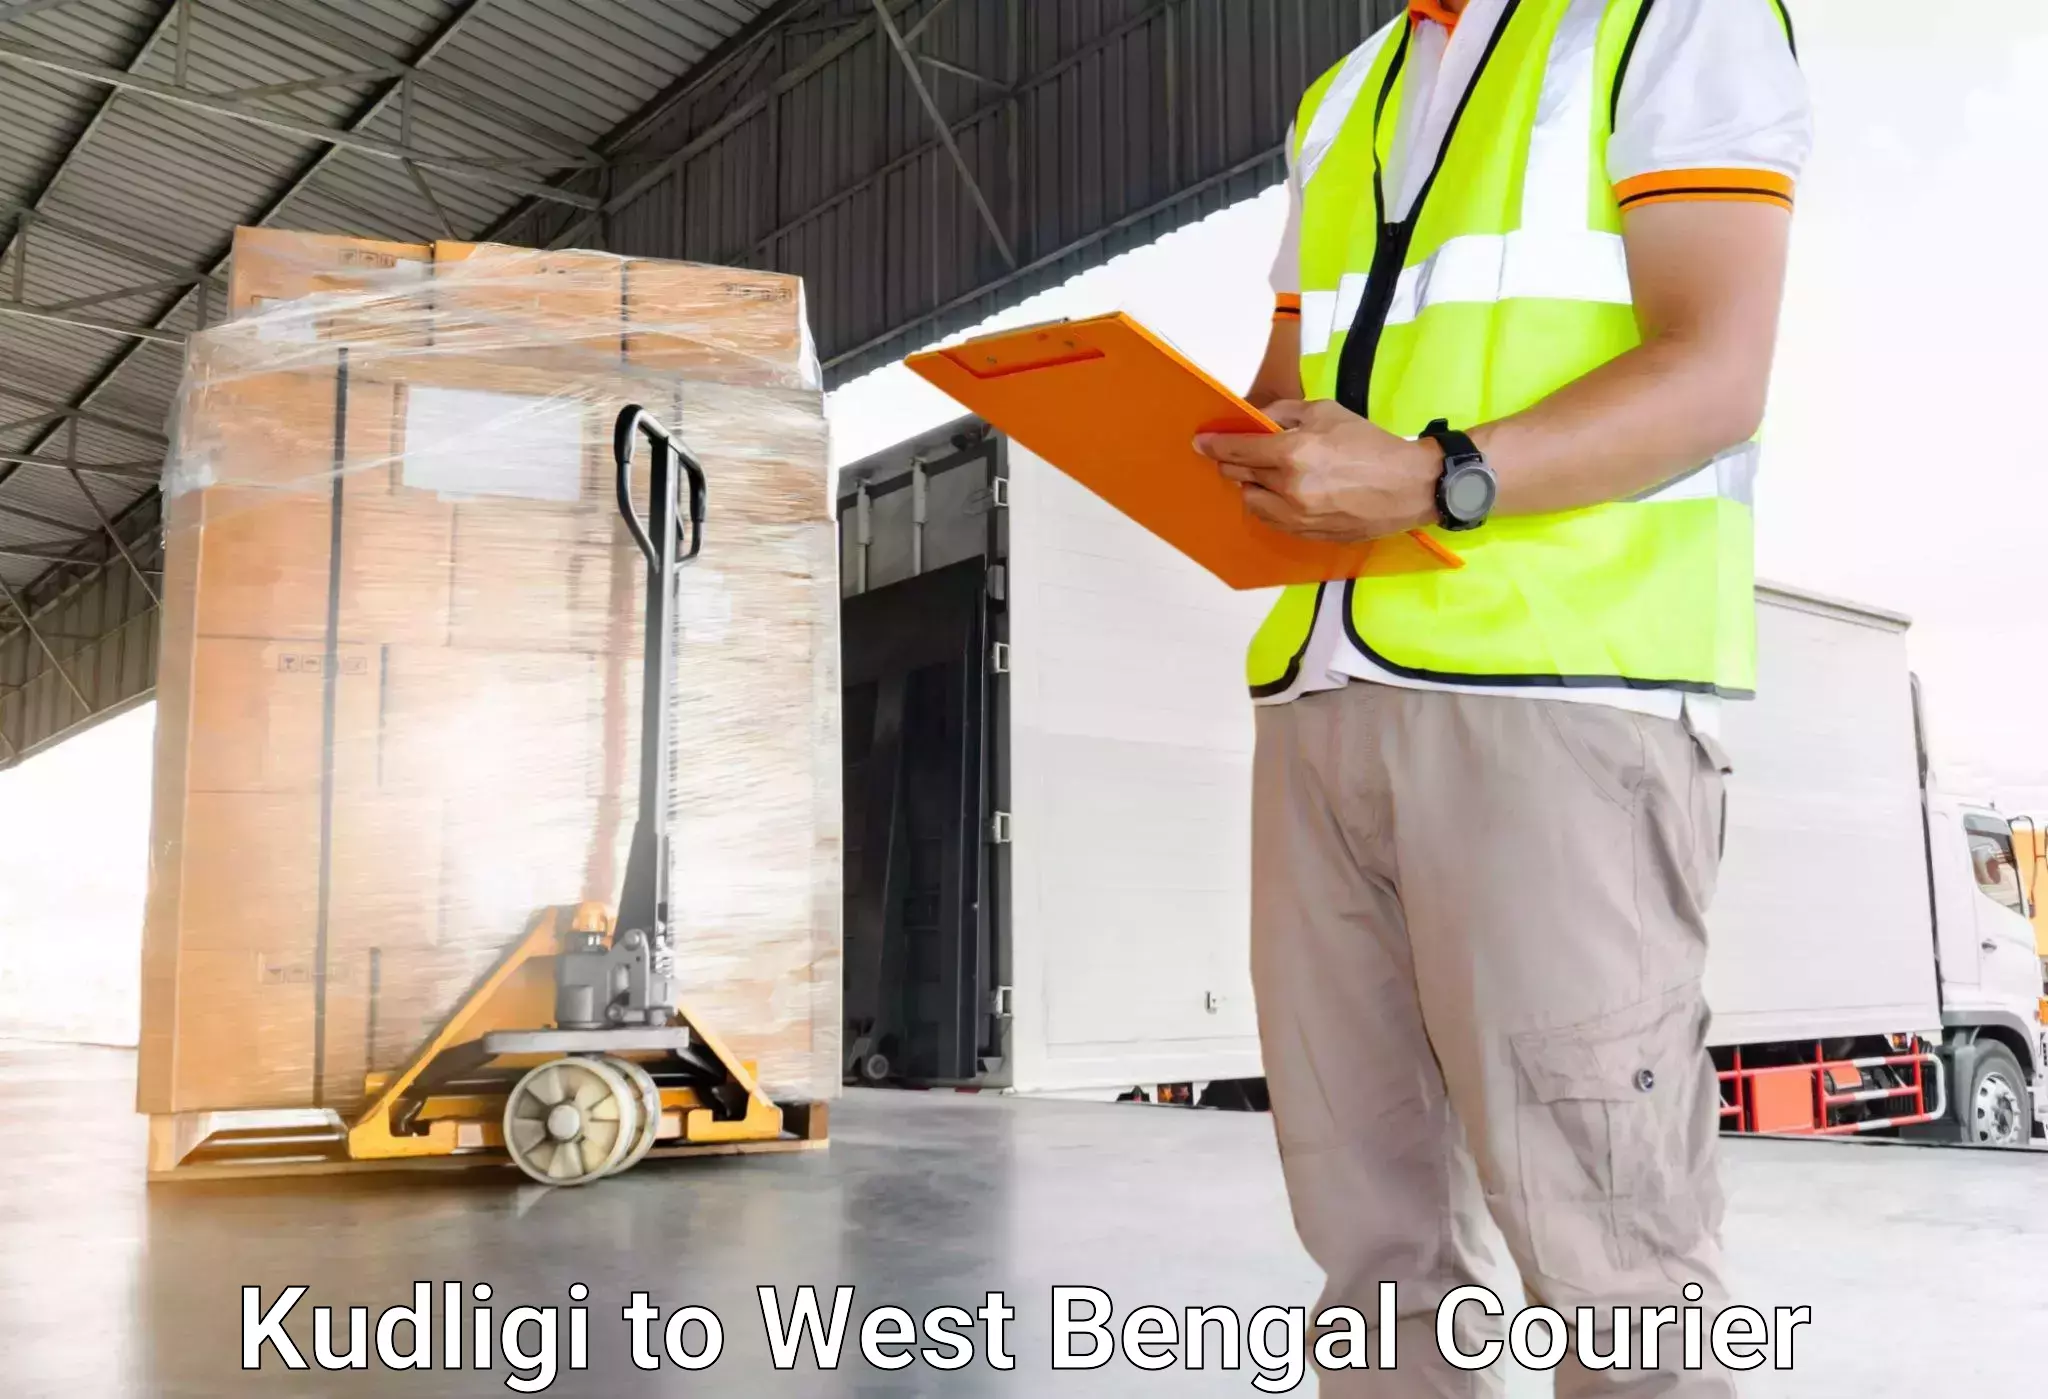 Luggage transfer service Kudligi to West Bengal